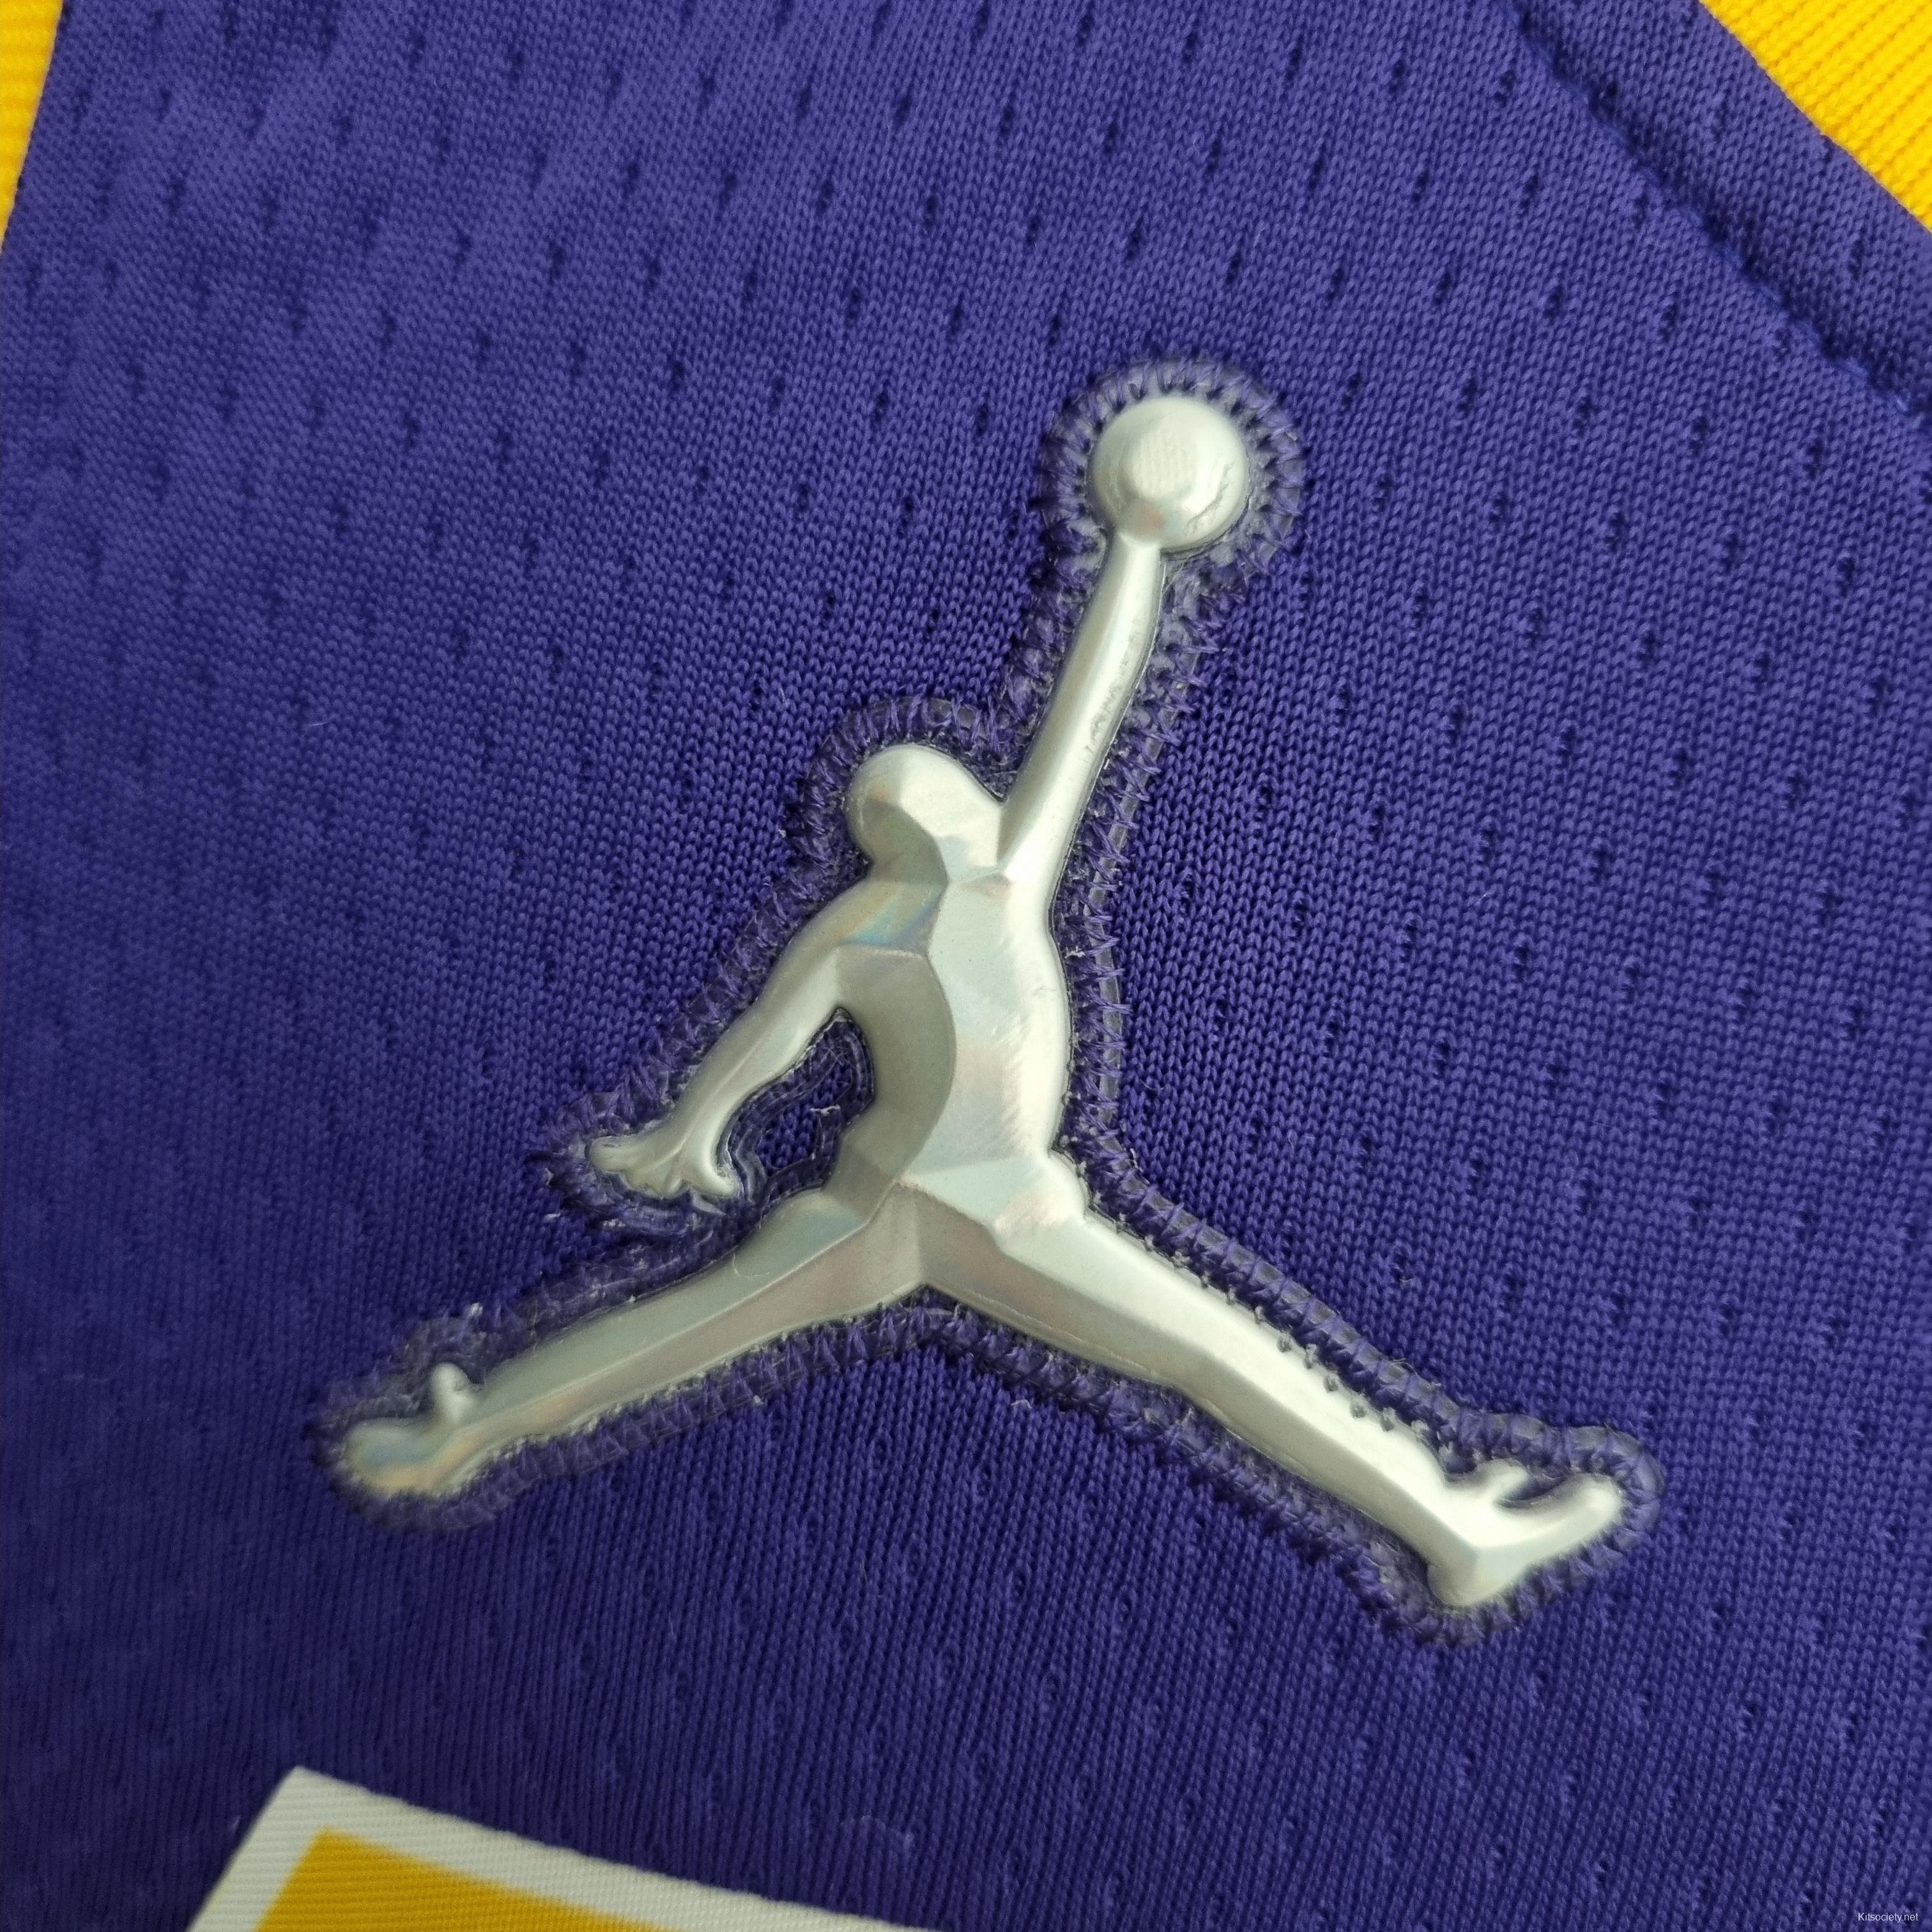 TOSCANO #95 Los Angeles Lakers Purple NBA Jersey - Kitsociety